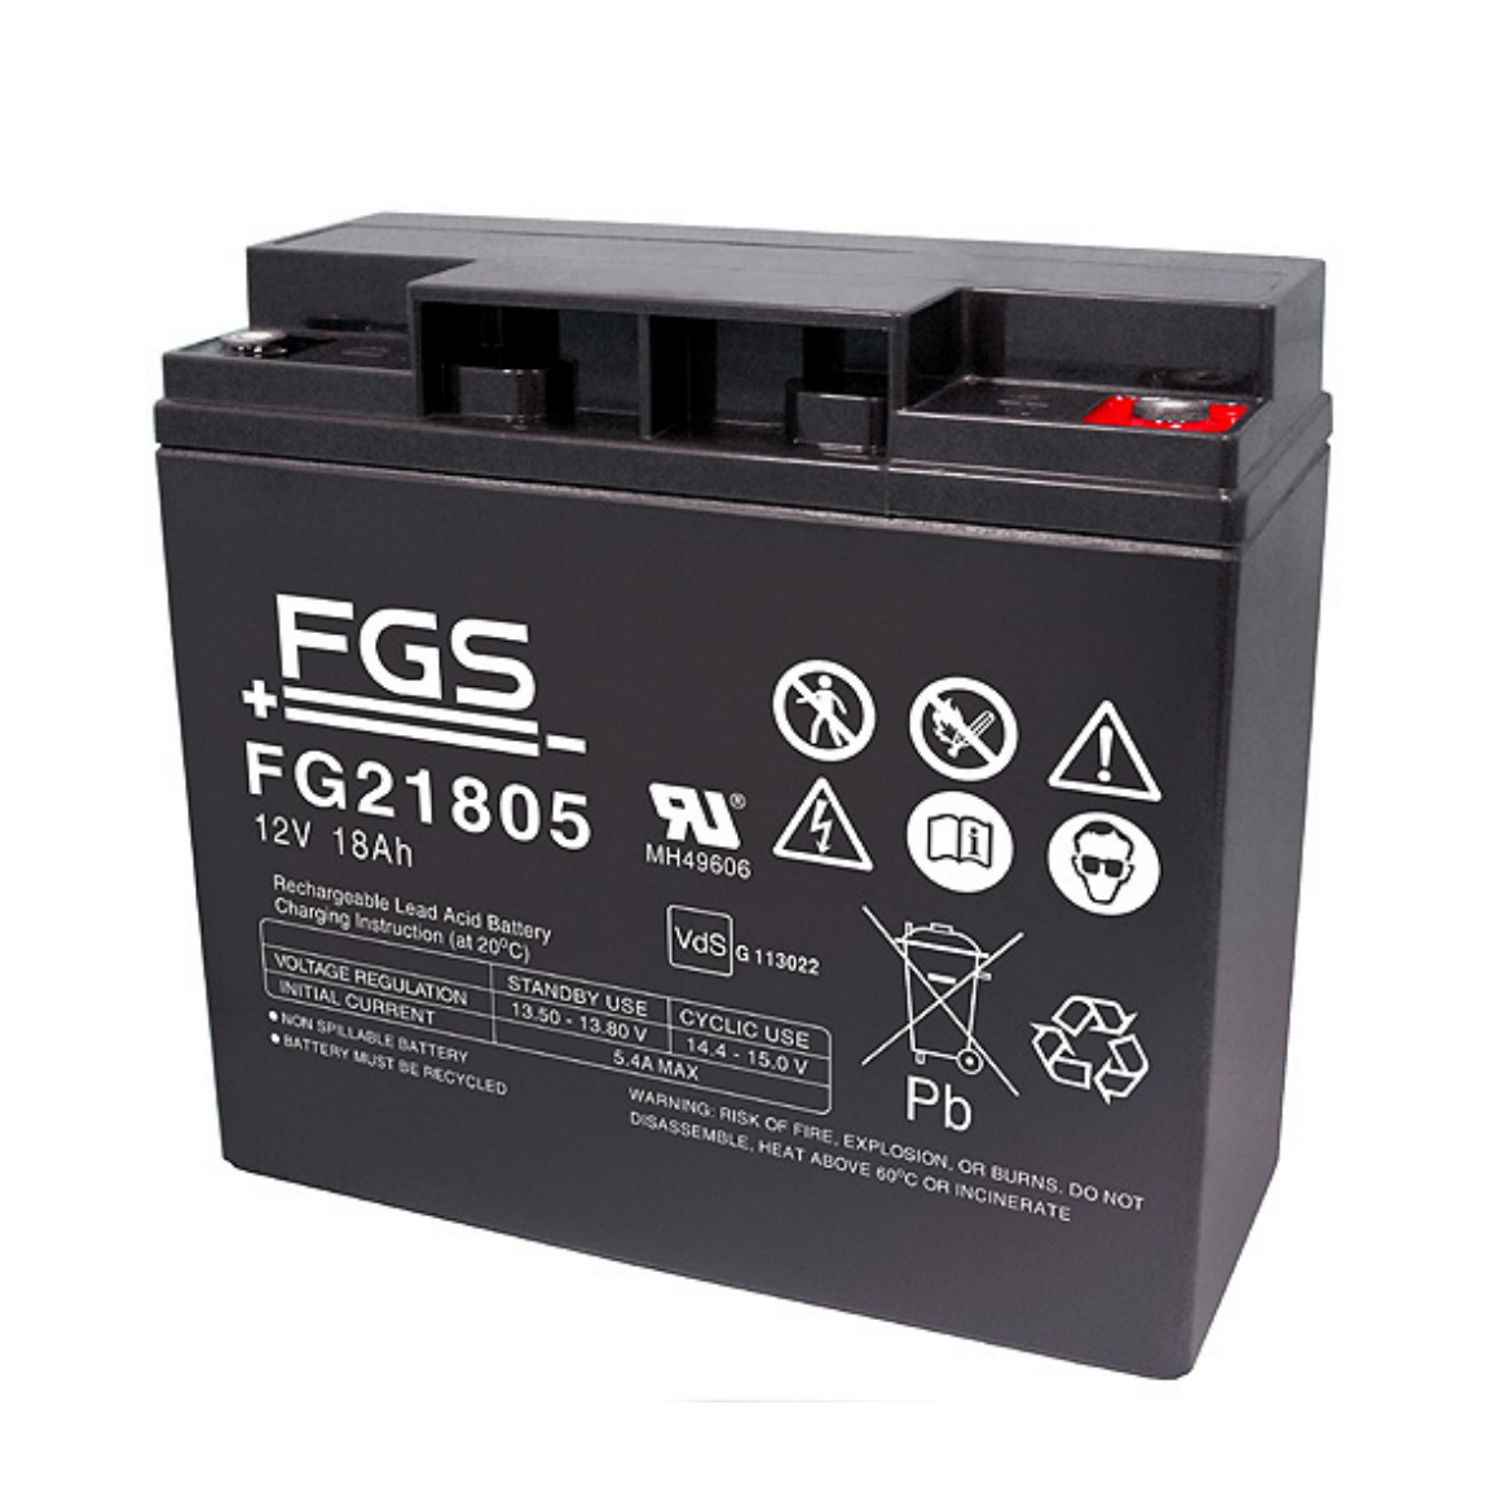 FGS FG21805 12V 18Ah Standard Blei-Akku